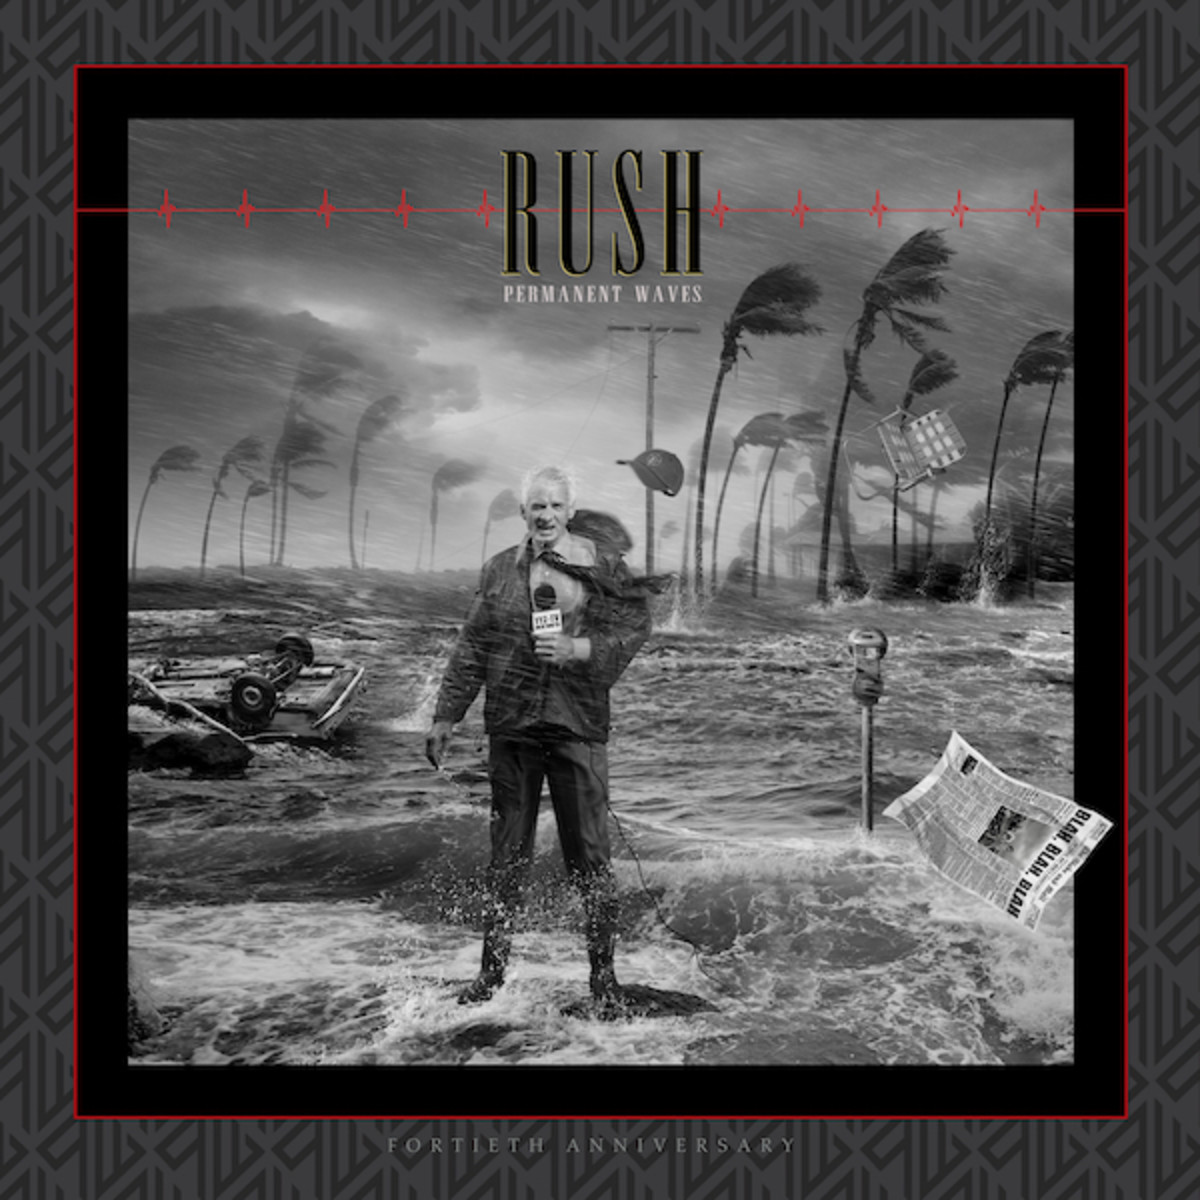 rush album by album book